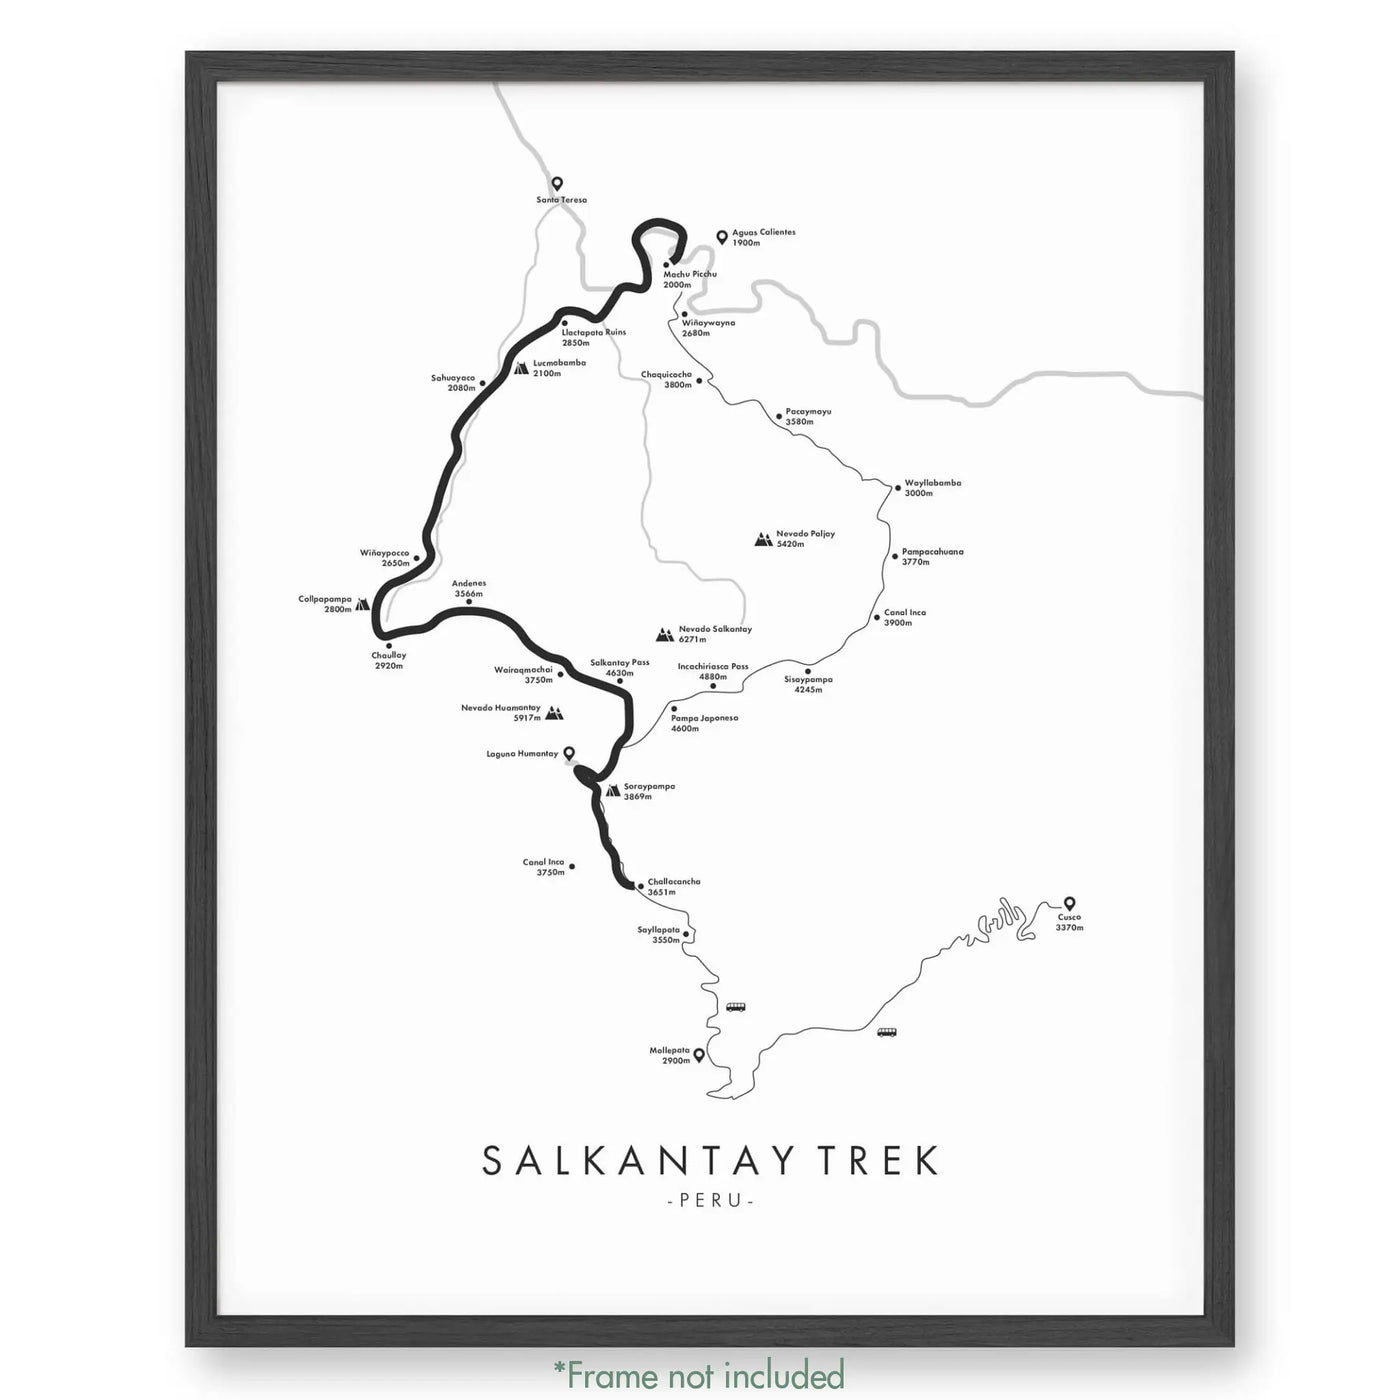 Trail Poster of Salkantay Trek - White